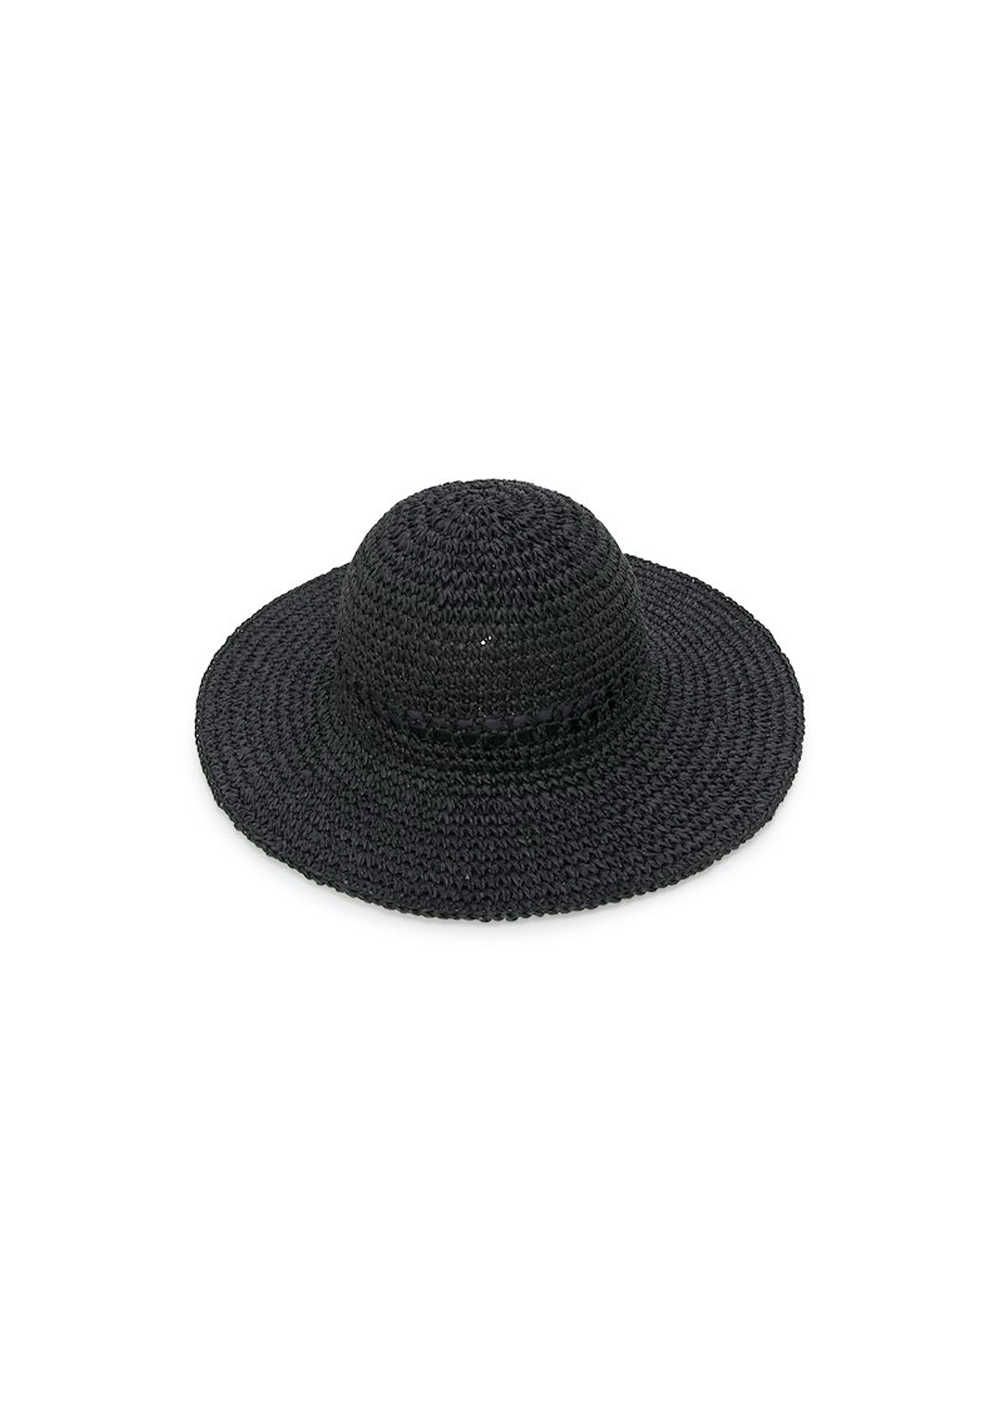 Greth Hat - Black - Part Two Canada - Danali